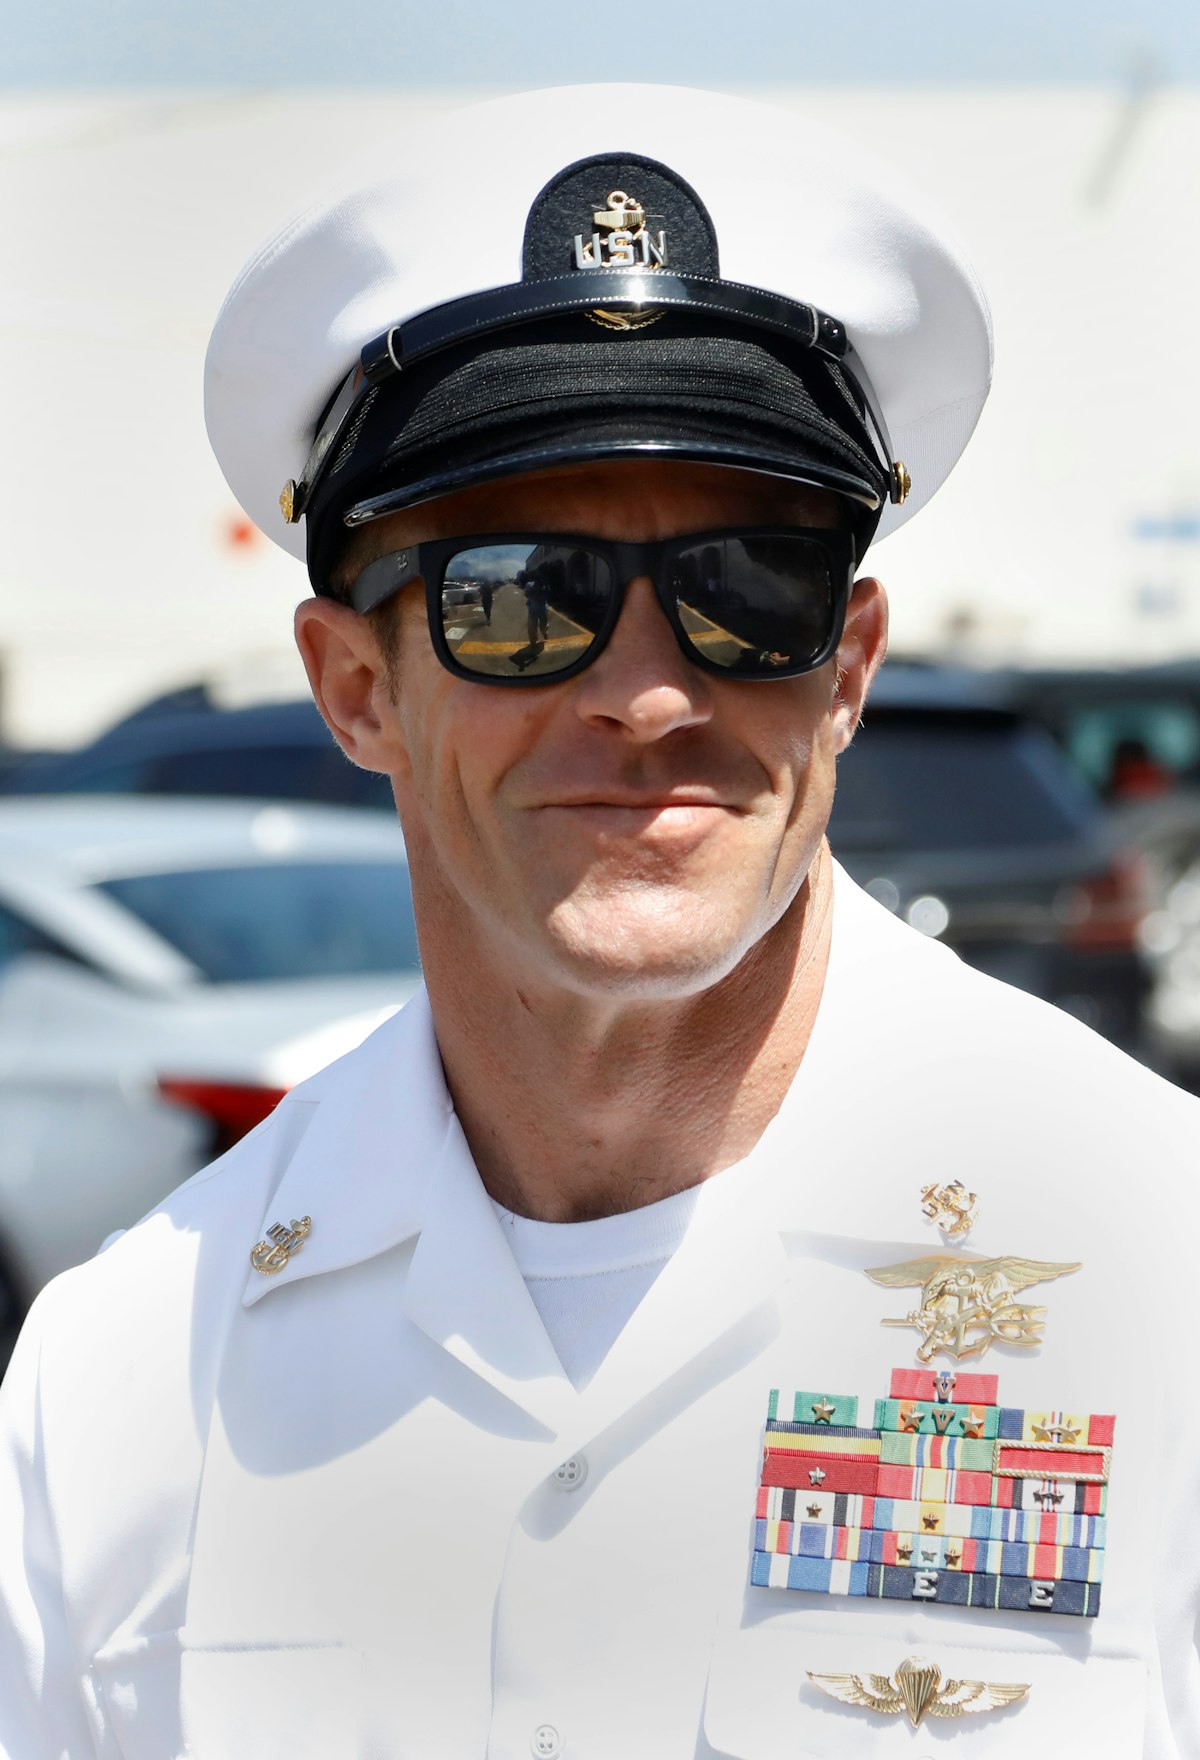 القائد السابق للعمليات الخاصة في البحرية الأميركية إدوارد غالاغر لدى محاكمته بجرائم حرب في كاليفورنيا - 2 يوليو 2019 - REUTERS